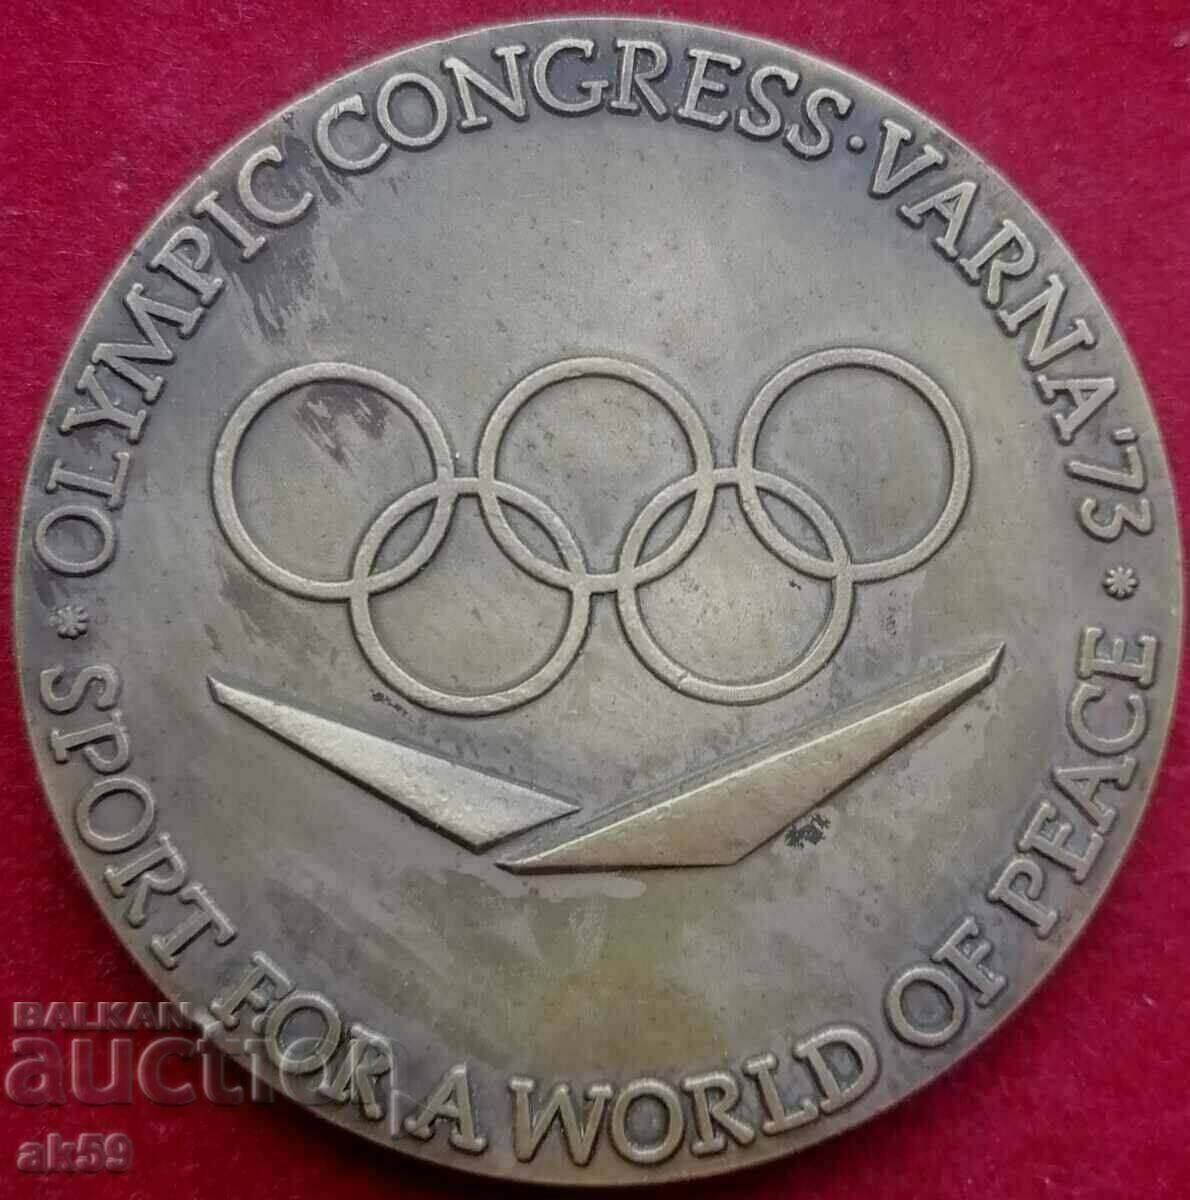 Ολυμπιακή πλακέτα "X Congress Varna" Madara καβαλάρης Λατινικά